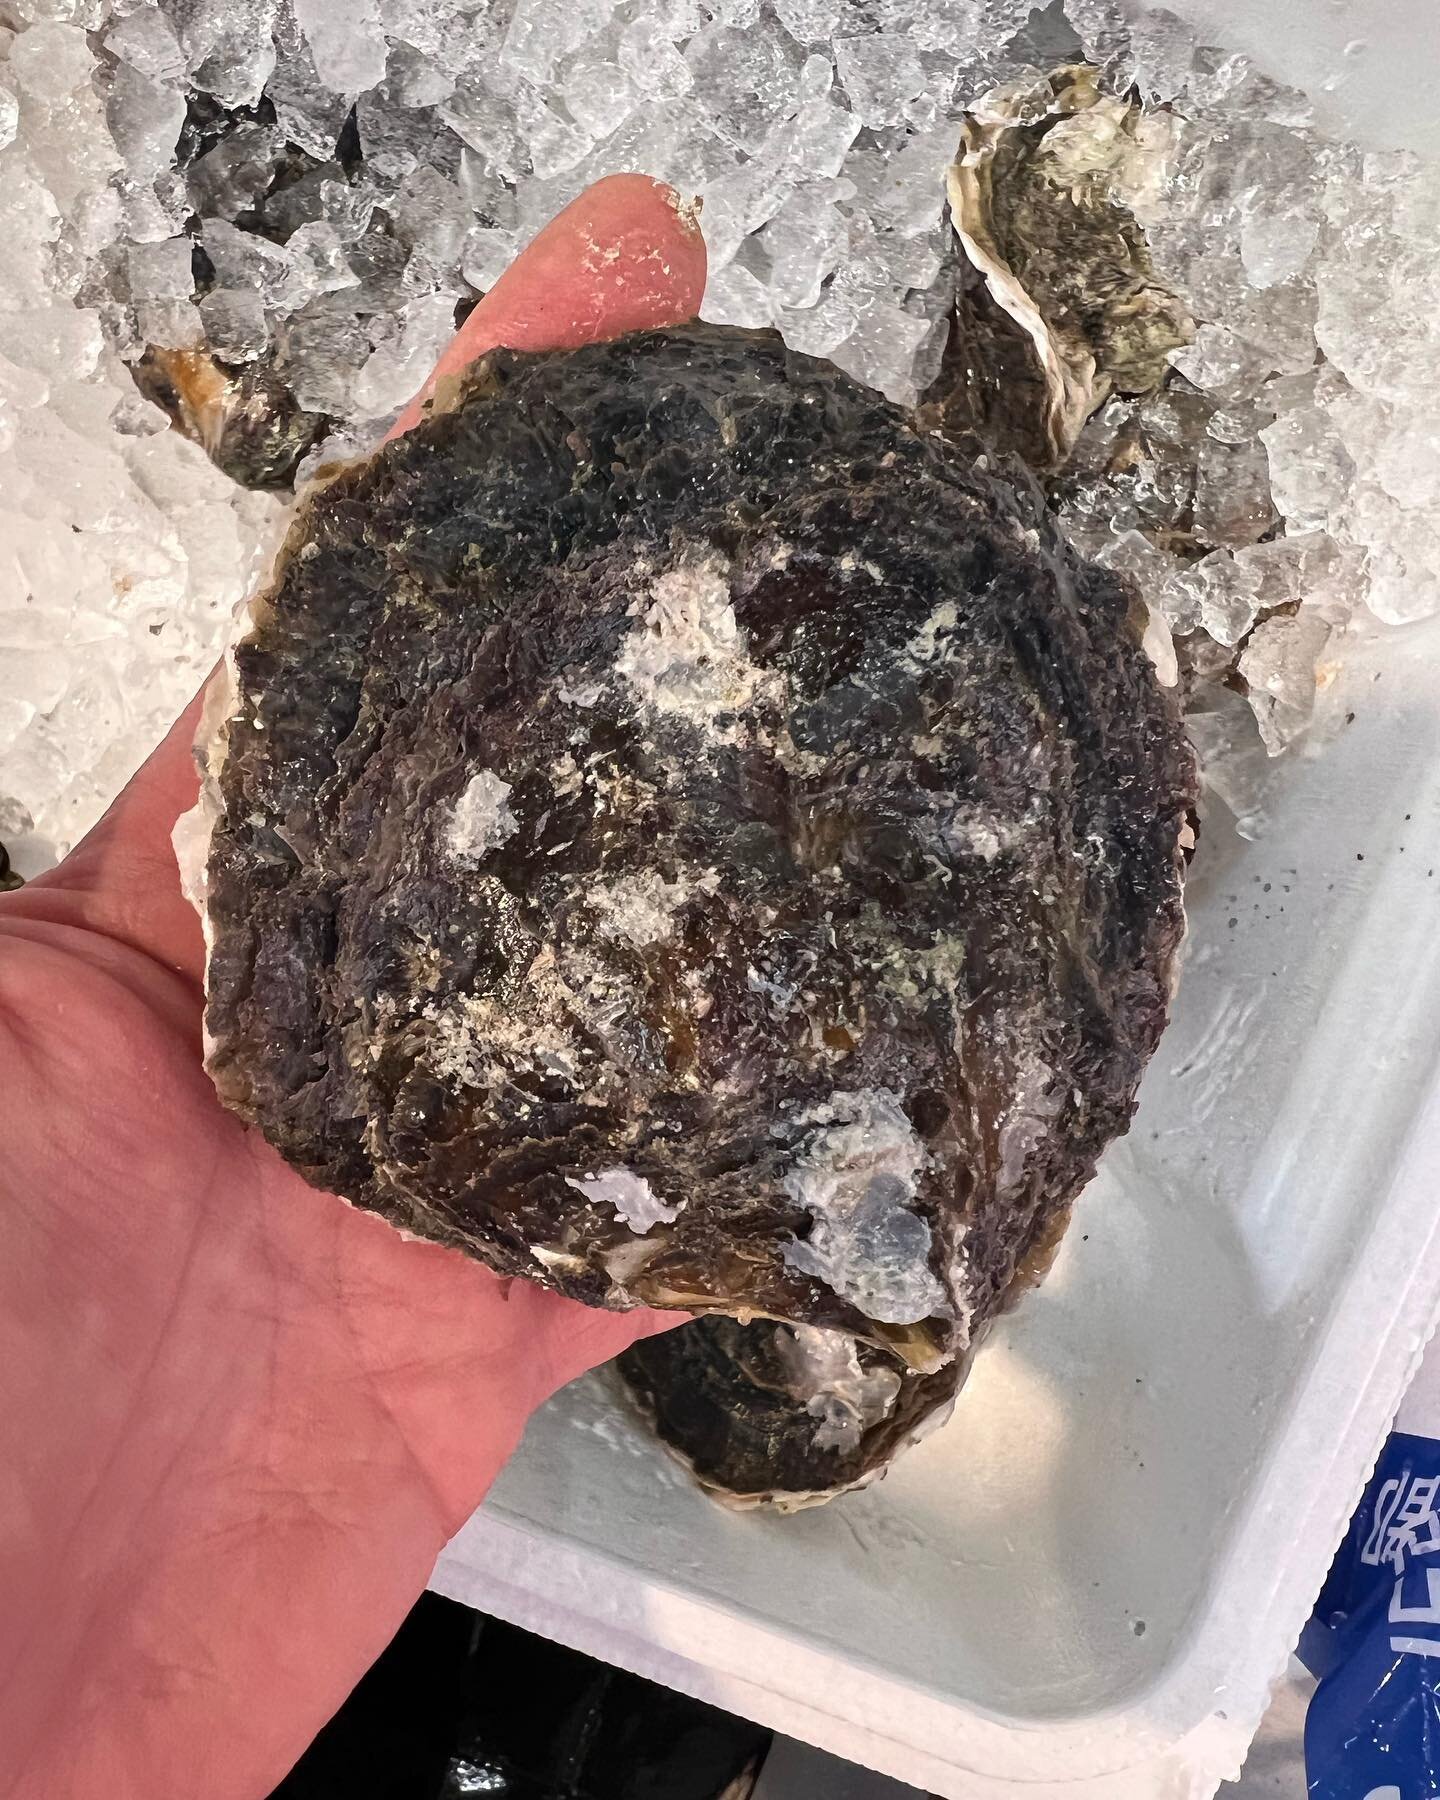 長崎の岩牡蠣。
三重の浅利は味噌汁に。
そして宮城産の天然スズキなど。このスズキめちゃくちゃ良いです。最後の写真は腹から出た脂なんですよ。